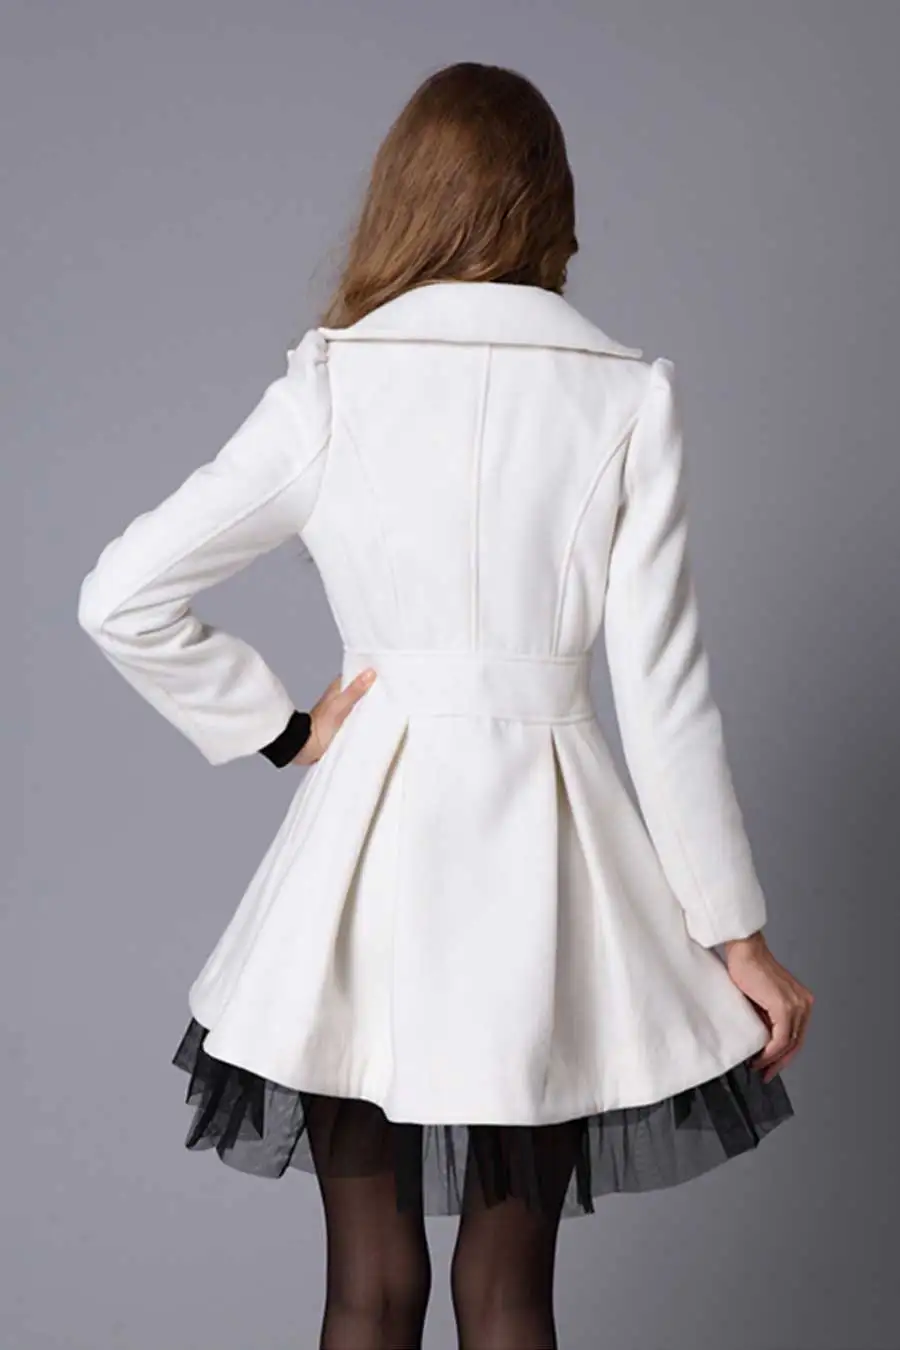 ZOGAA бренд Для женщин длинный плащ пальто Демисезонный двубортное приталенное пальто кружева ветровка верхняя одежда женская одежда